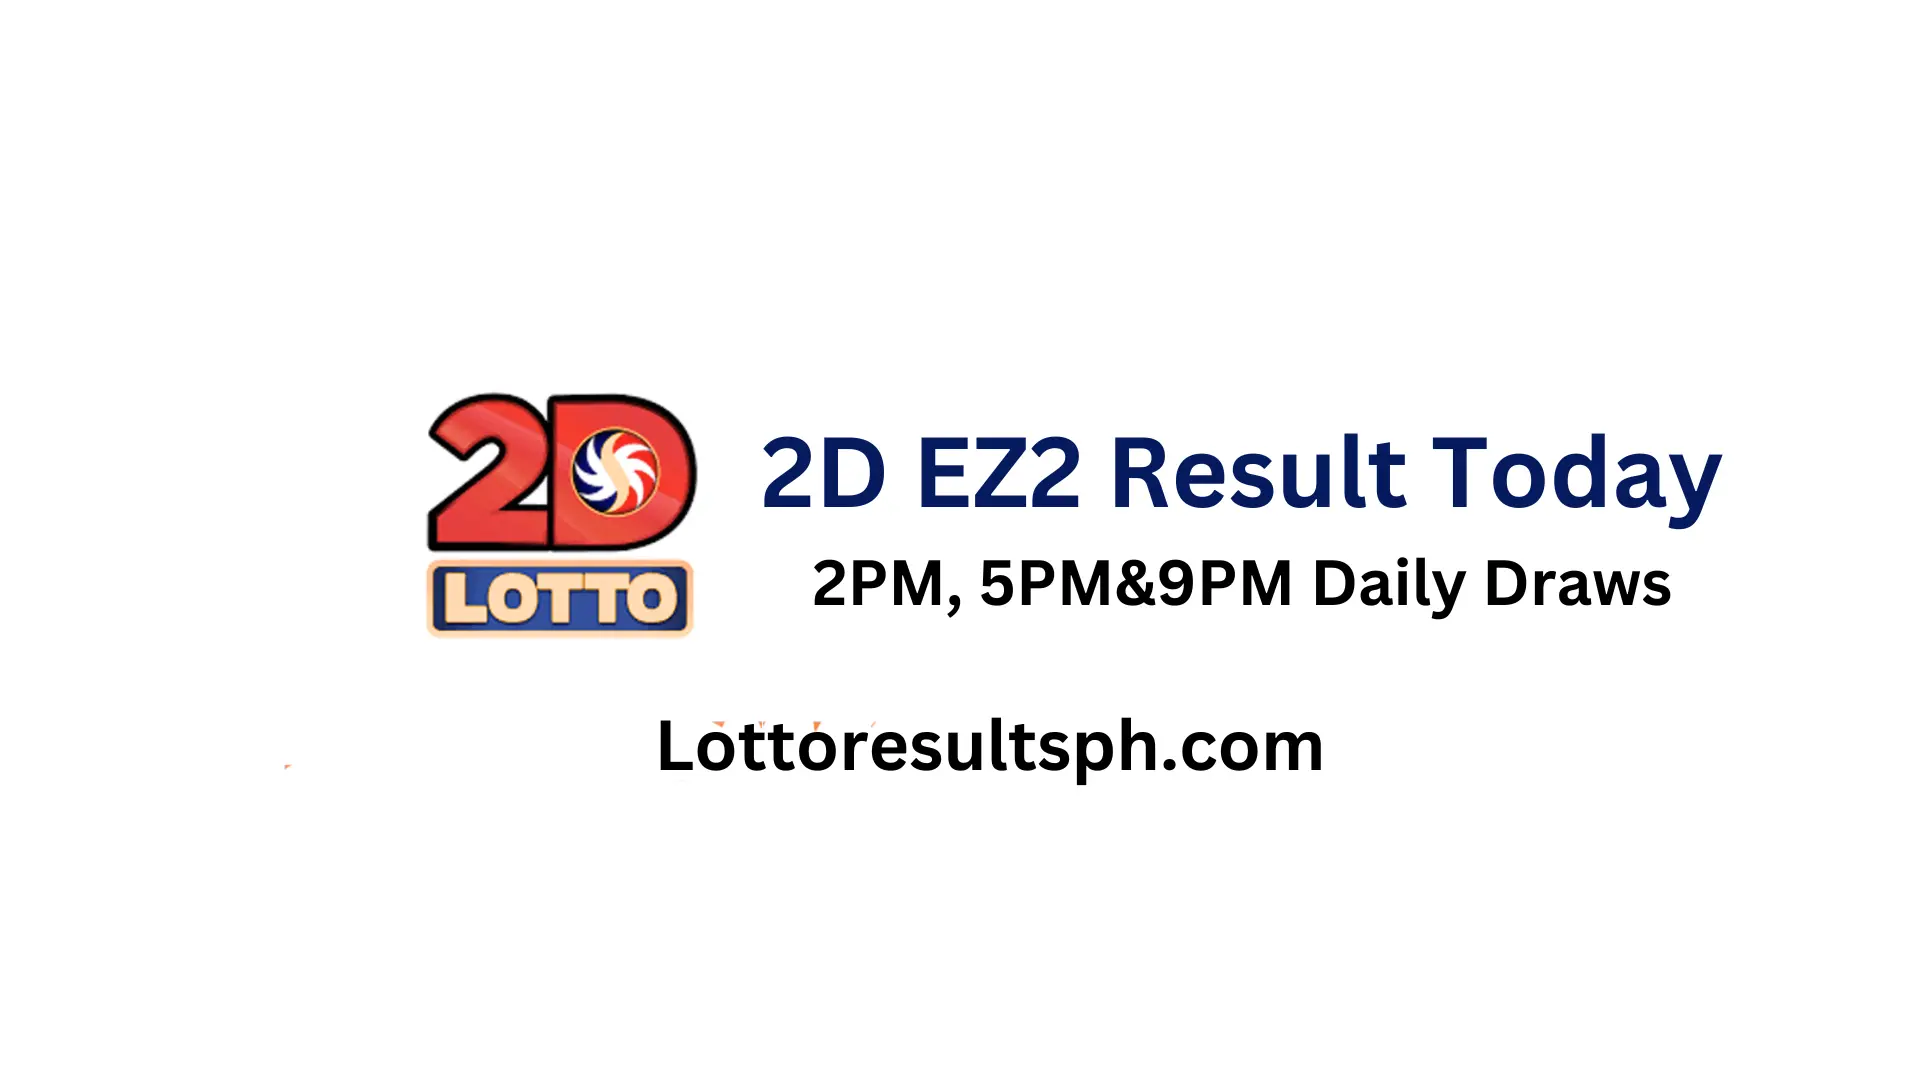 EZ2 Result Today